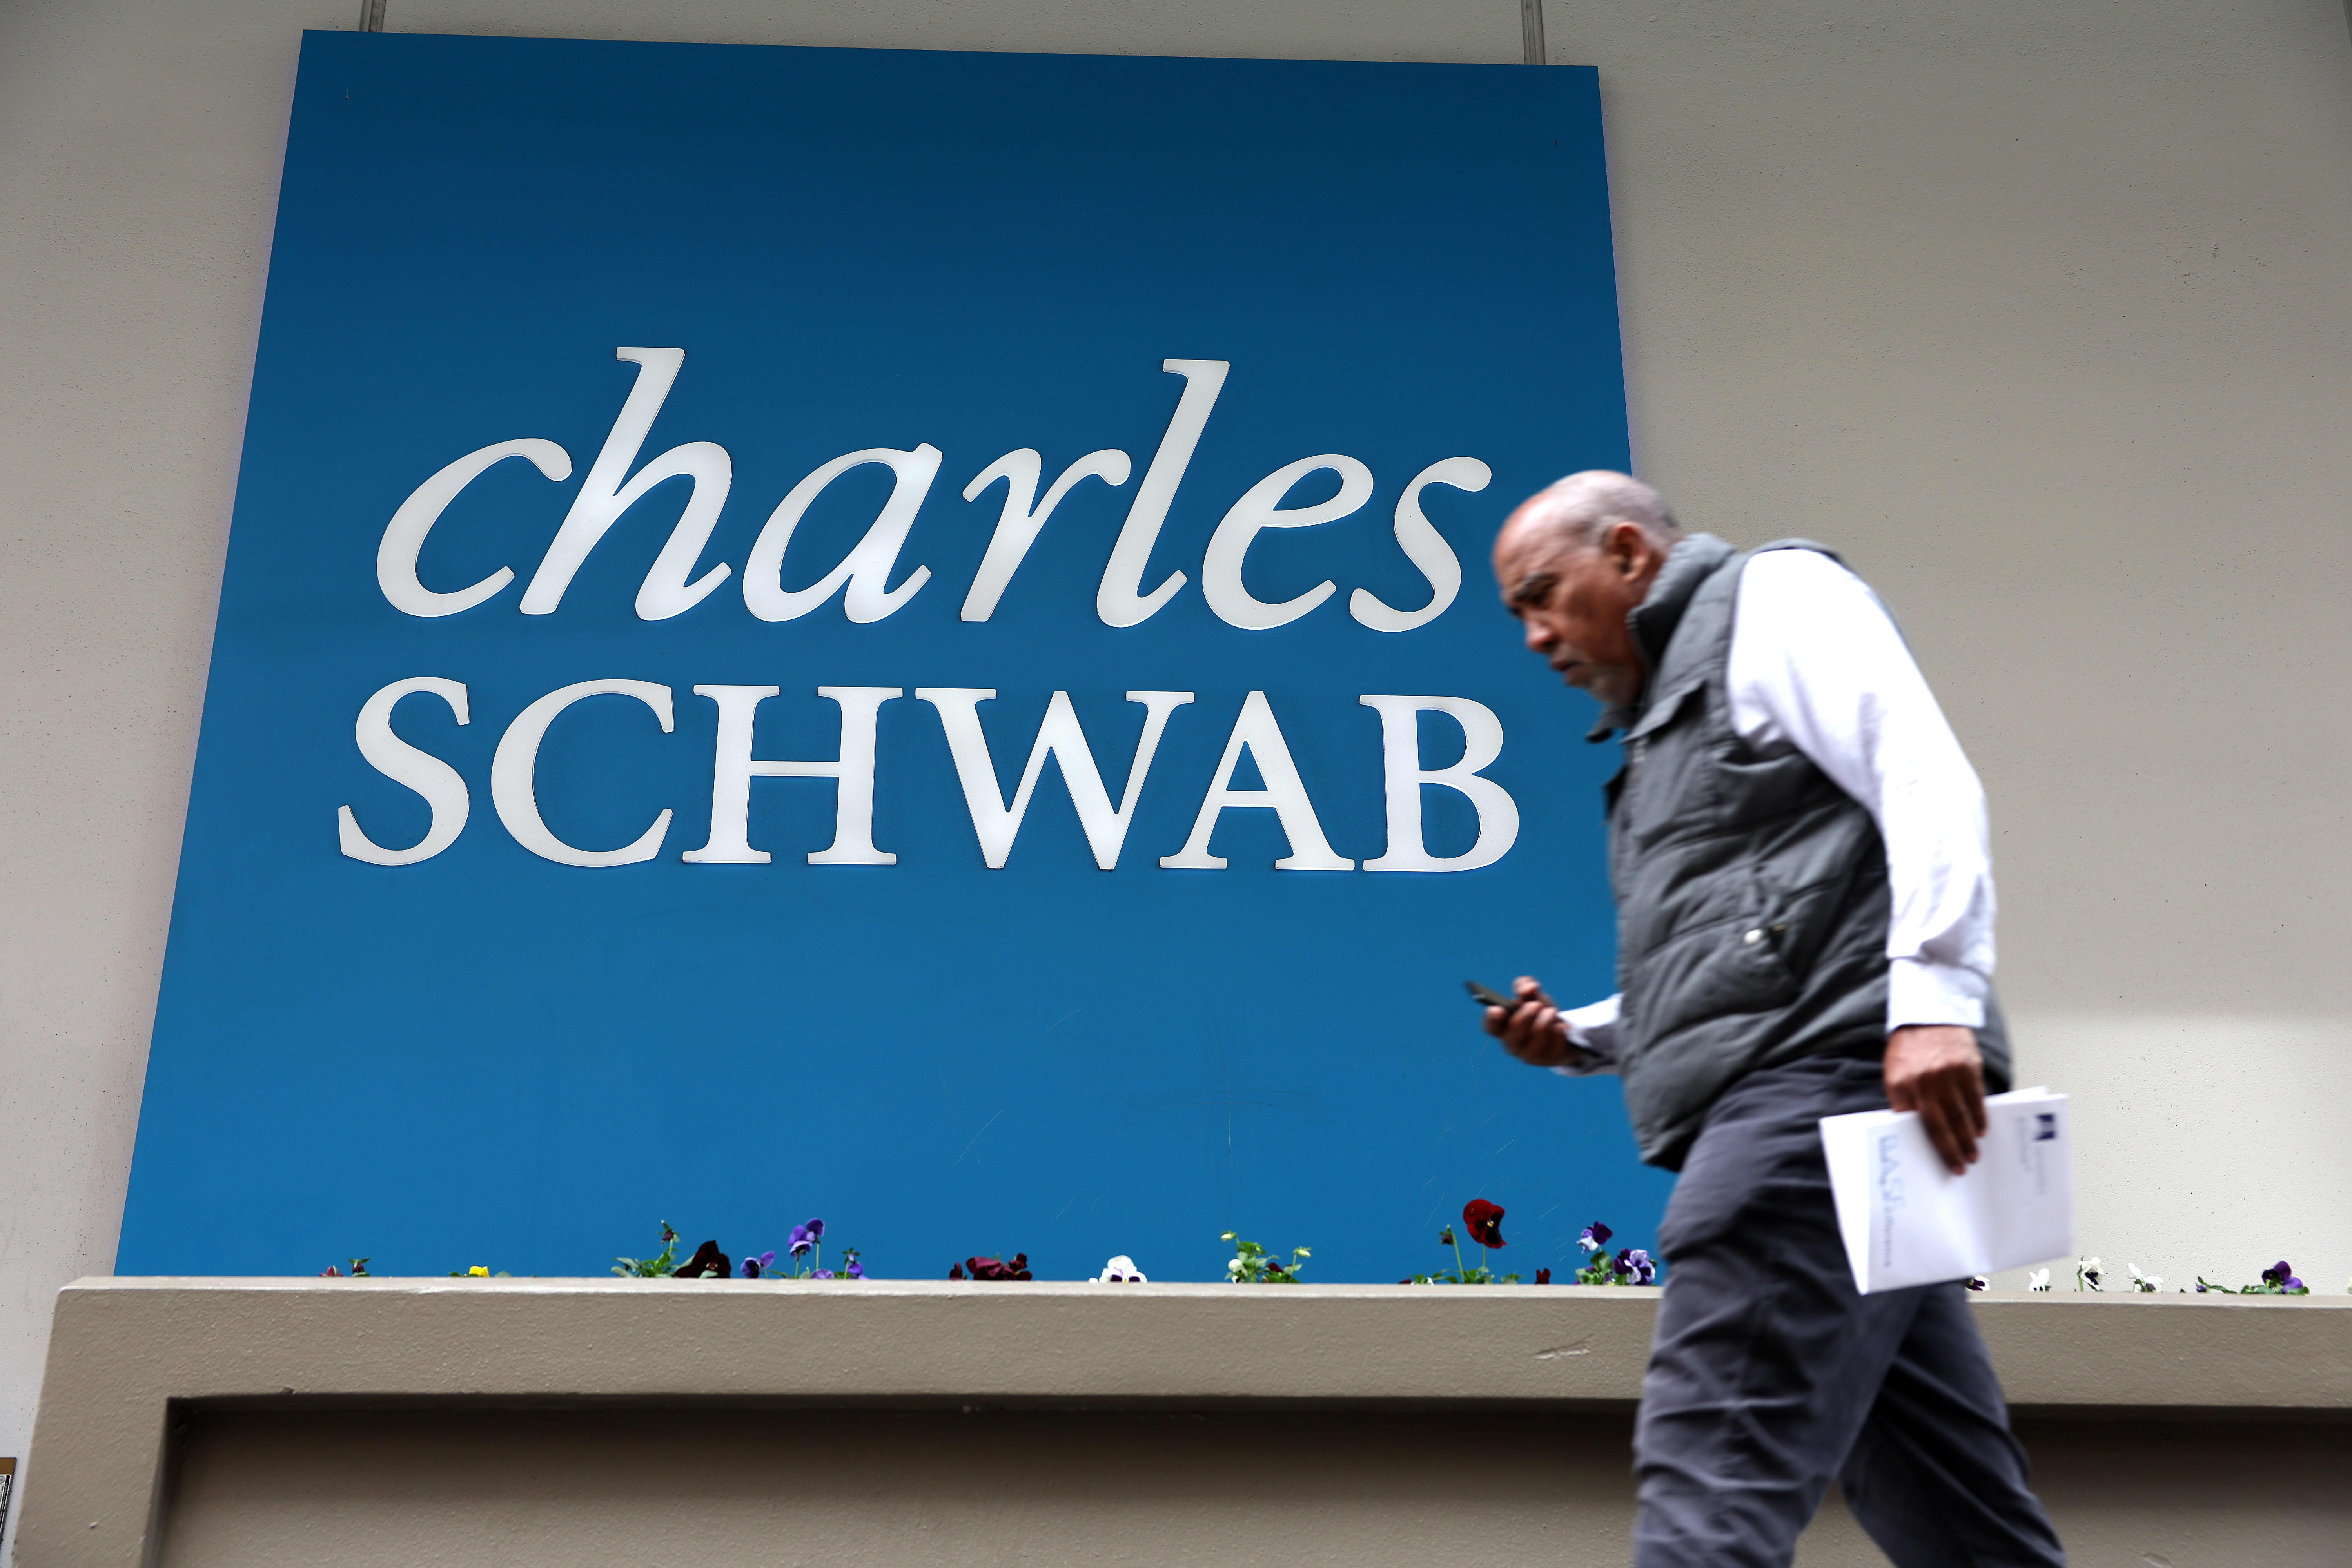 Compre acciones de Charles Schwab para superar la posible volatilidad del verano, dice Deutsche Bank